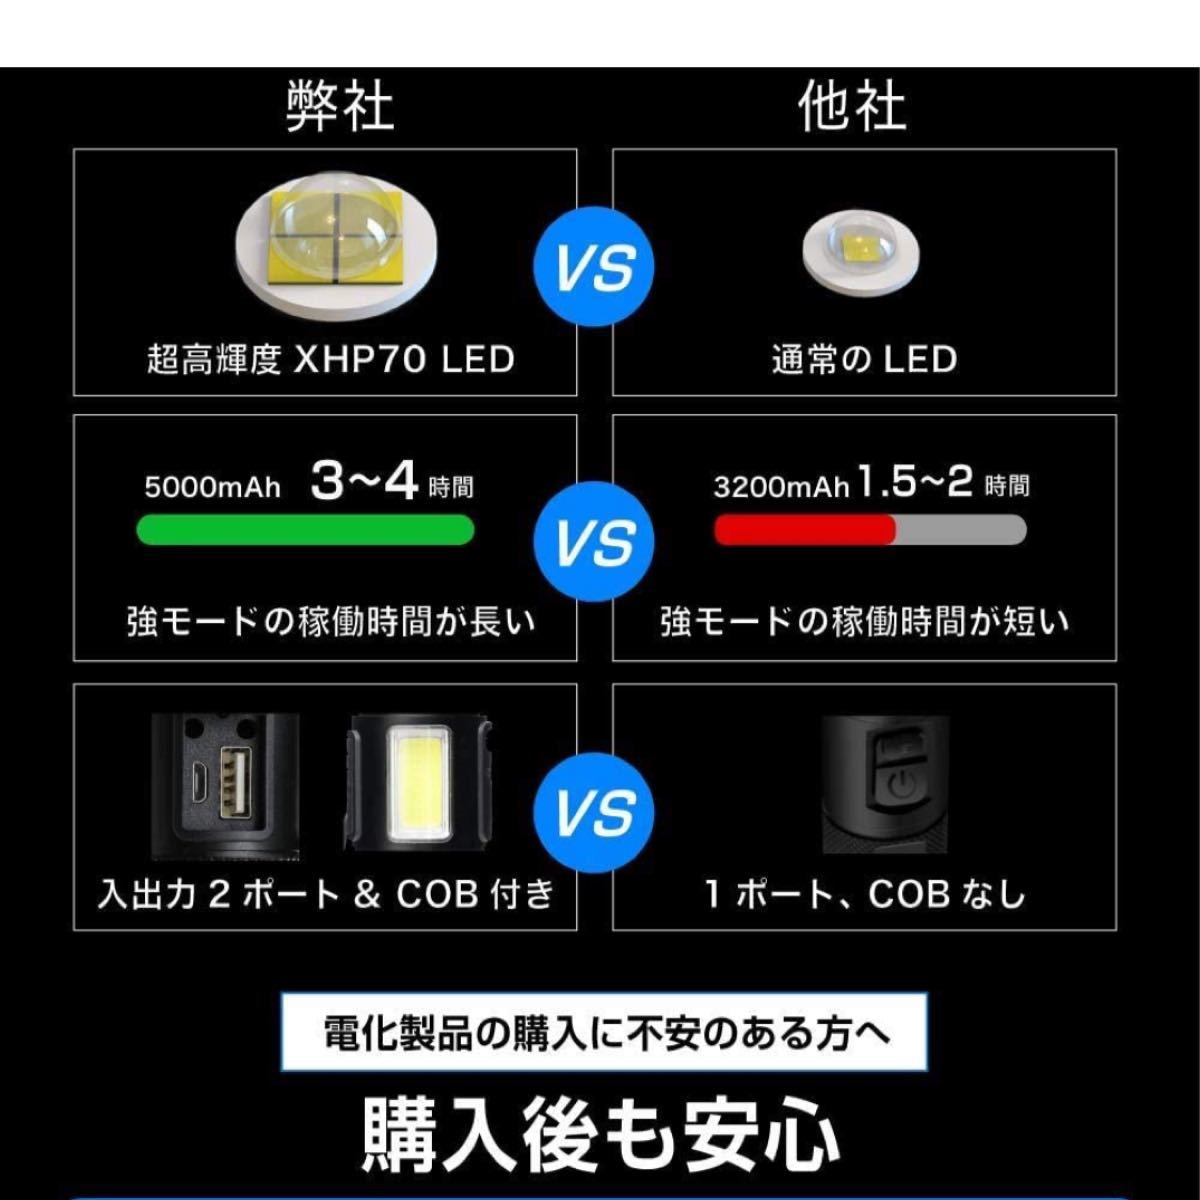 【進化版】懐中電灯 Led 強力 軍用 最強 超高輝度 USB充電式双方向 ハンディライト XHP70 7モード COB作業灯